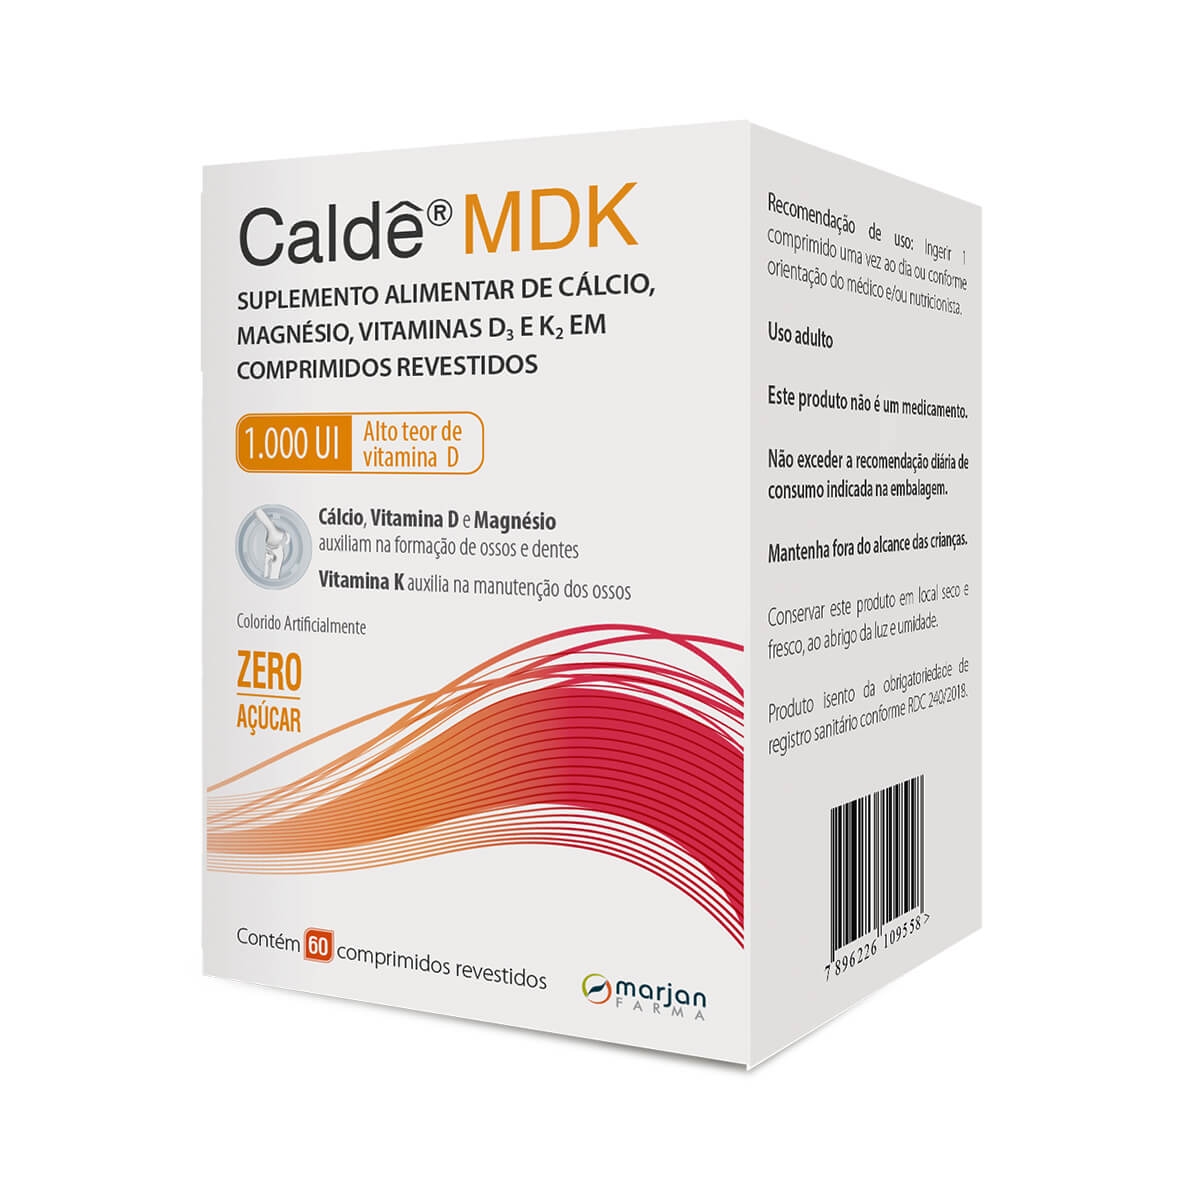 Suplemento Alimentar Caldê MDK 1000UI com 60 comprimidos